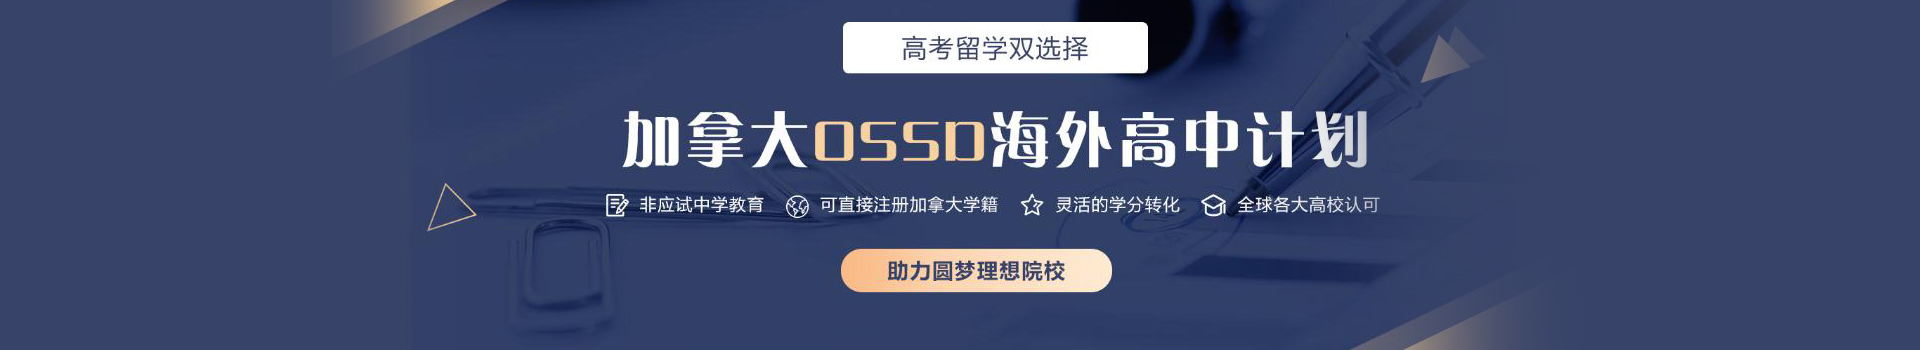 广州新航道OSSD课程